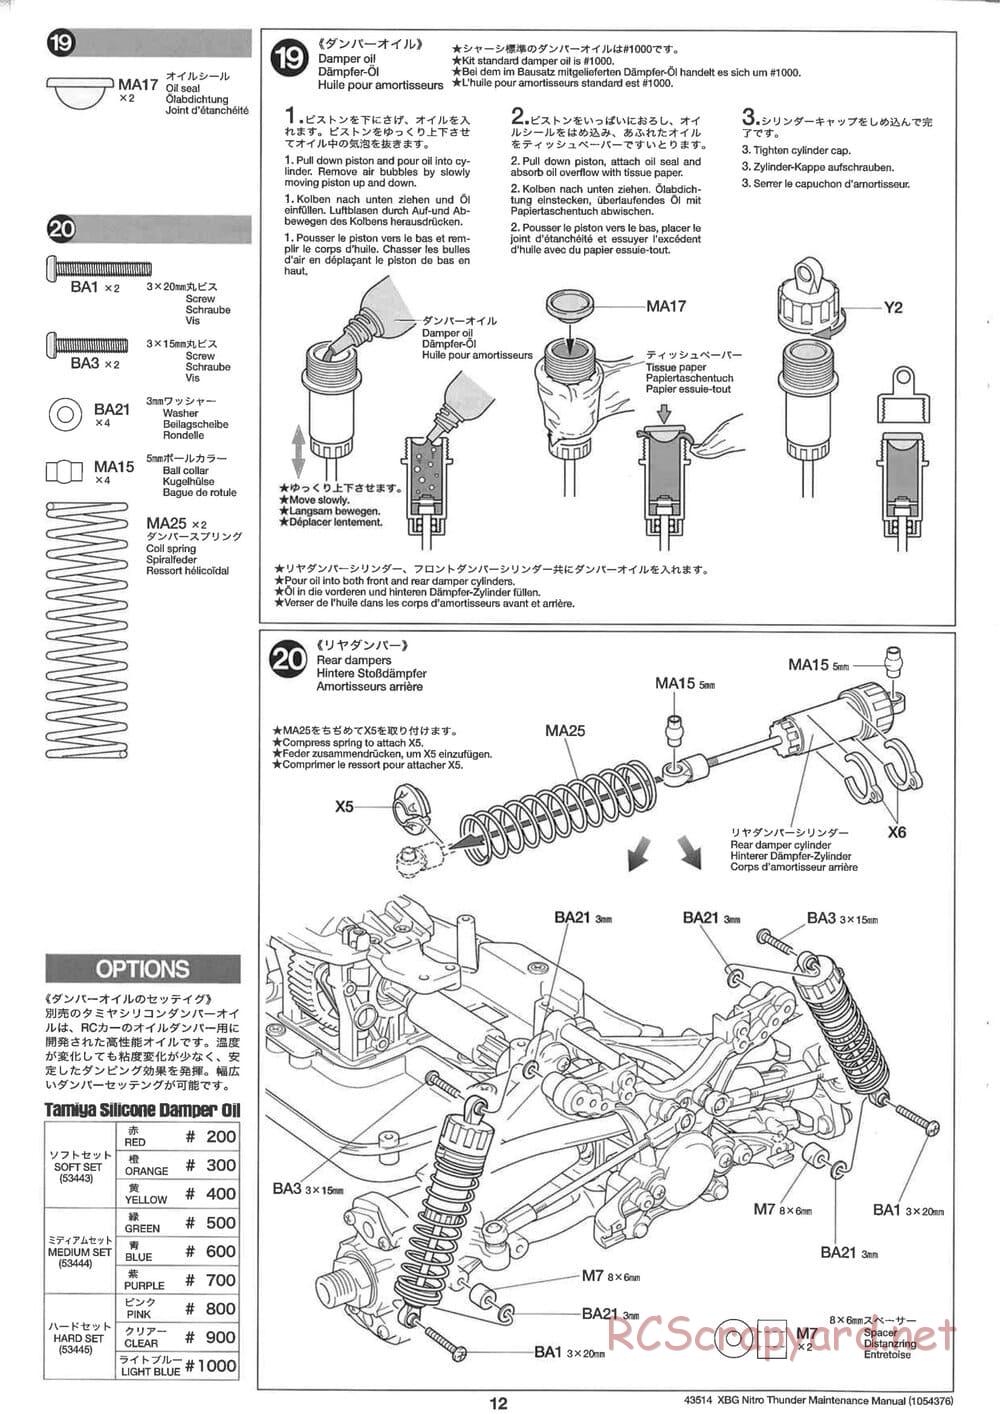 Tamiya - Nitro Thunder - NDF-01 Chassis - Manual - Page 12